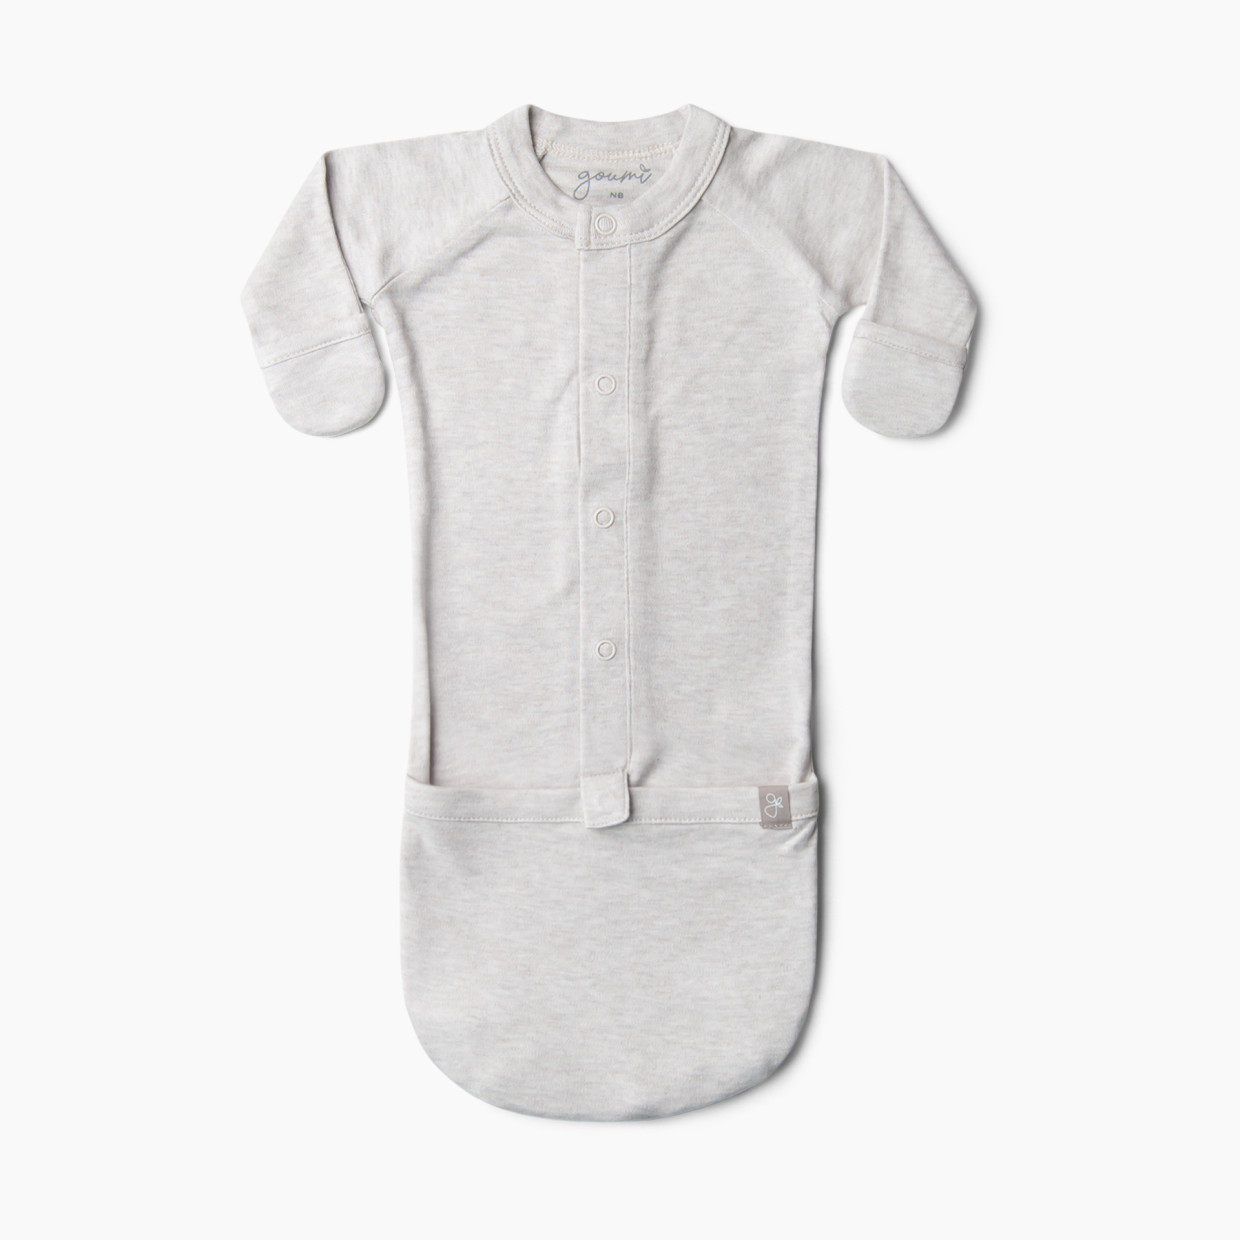 Goumi Kids 24 hr Convertible Sleeper Baby Gown - Storm Gray, 0-3 M.